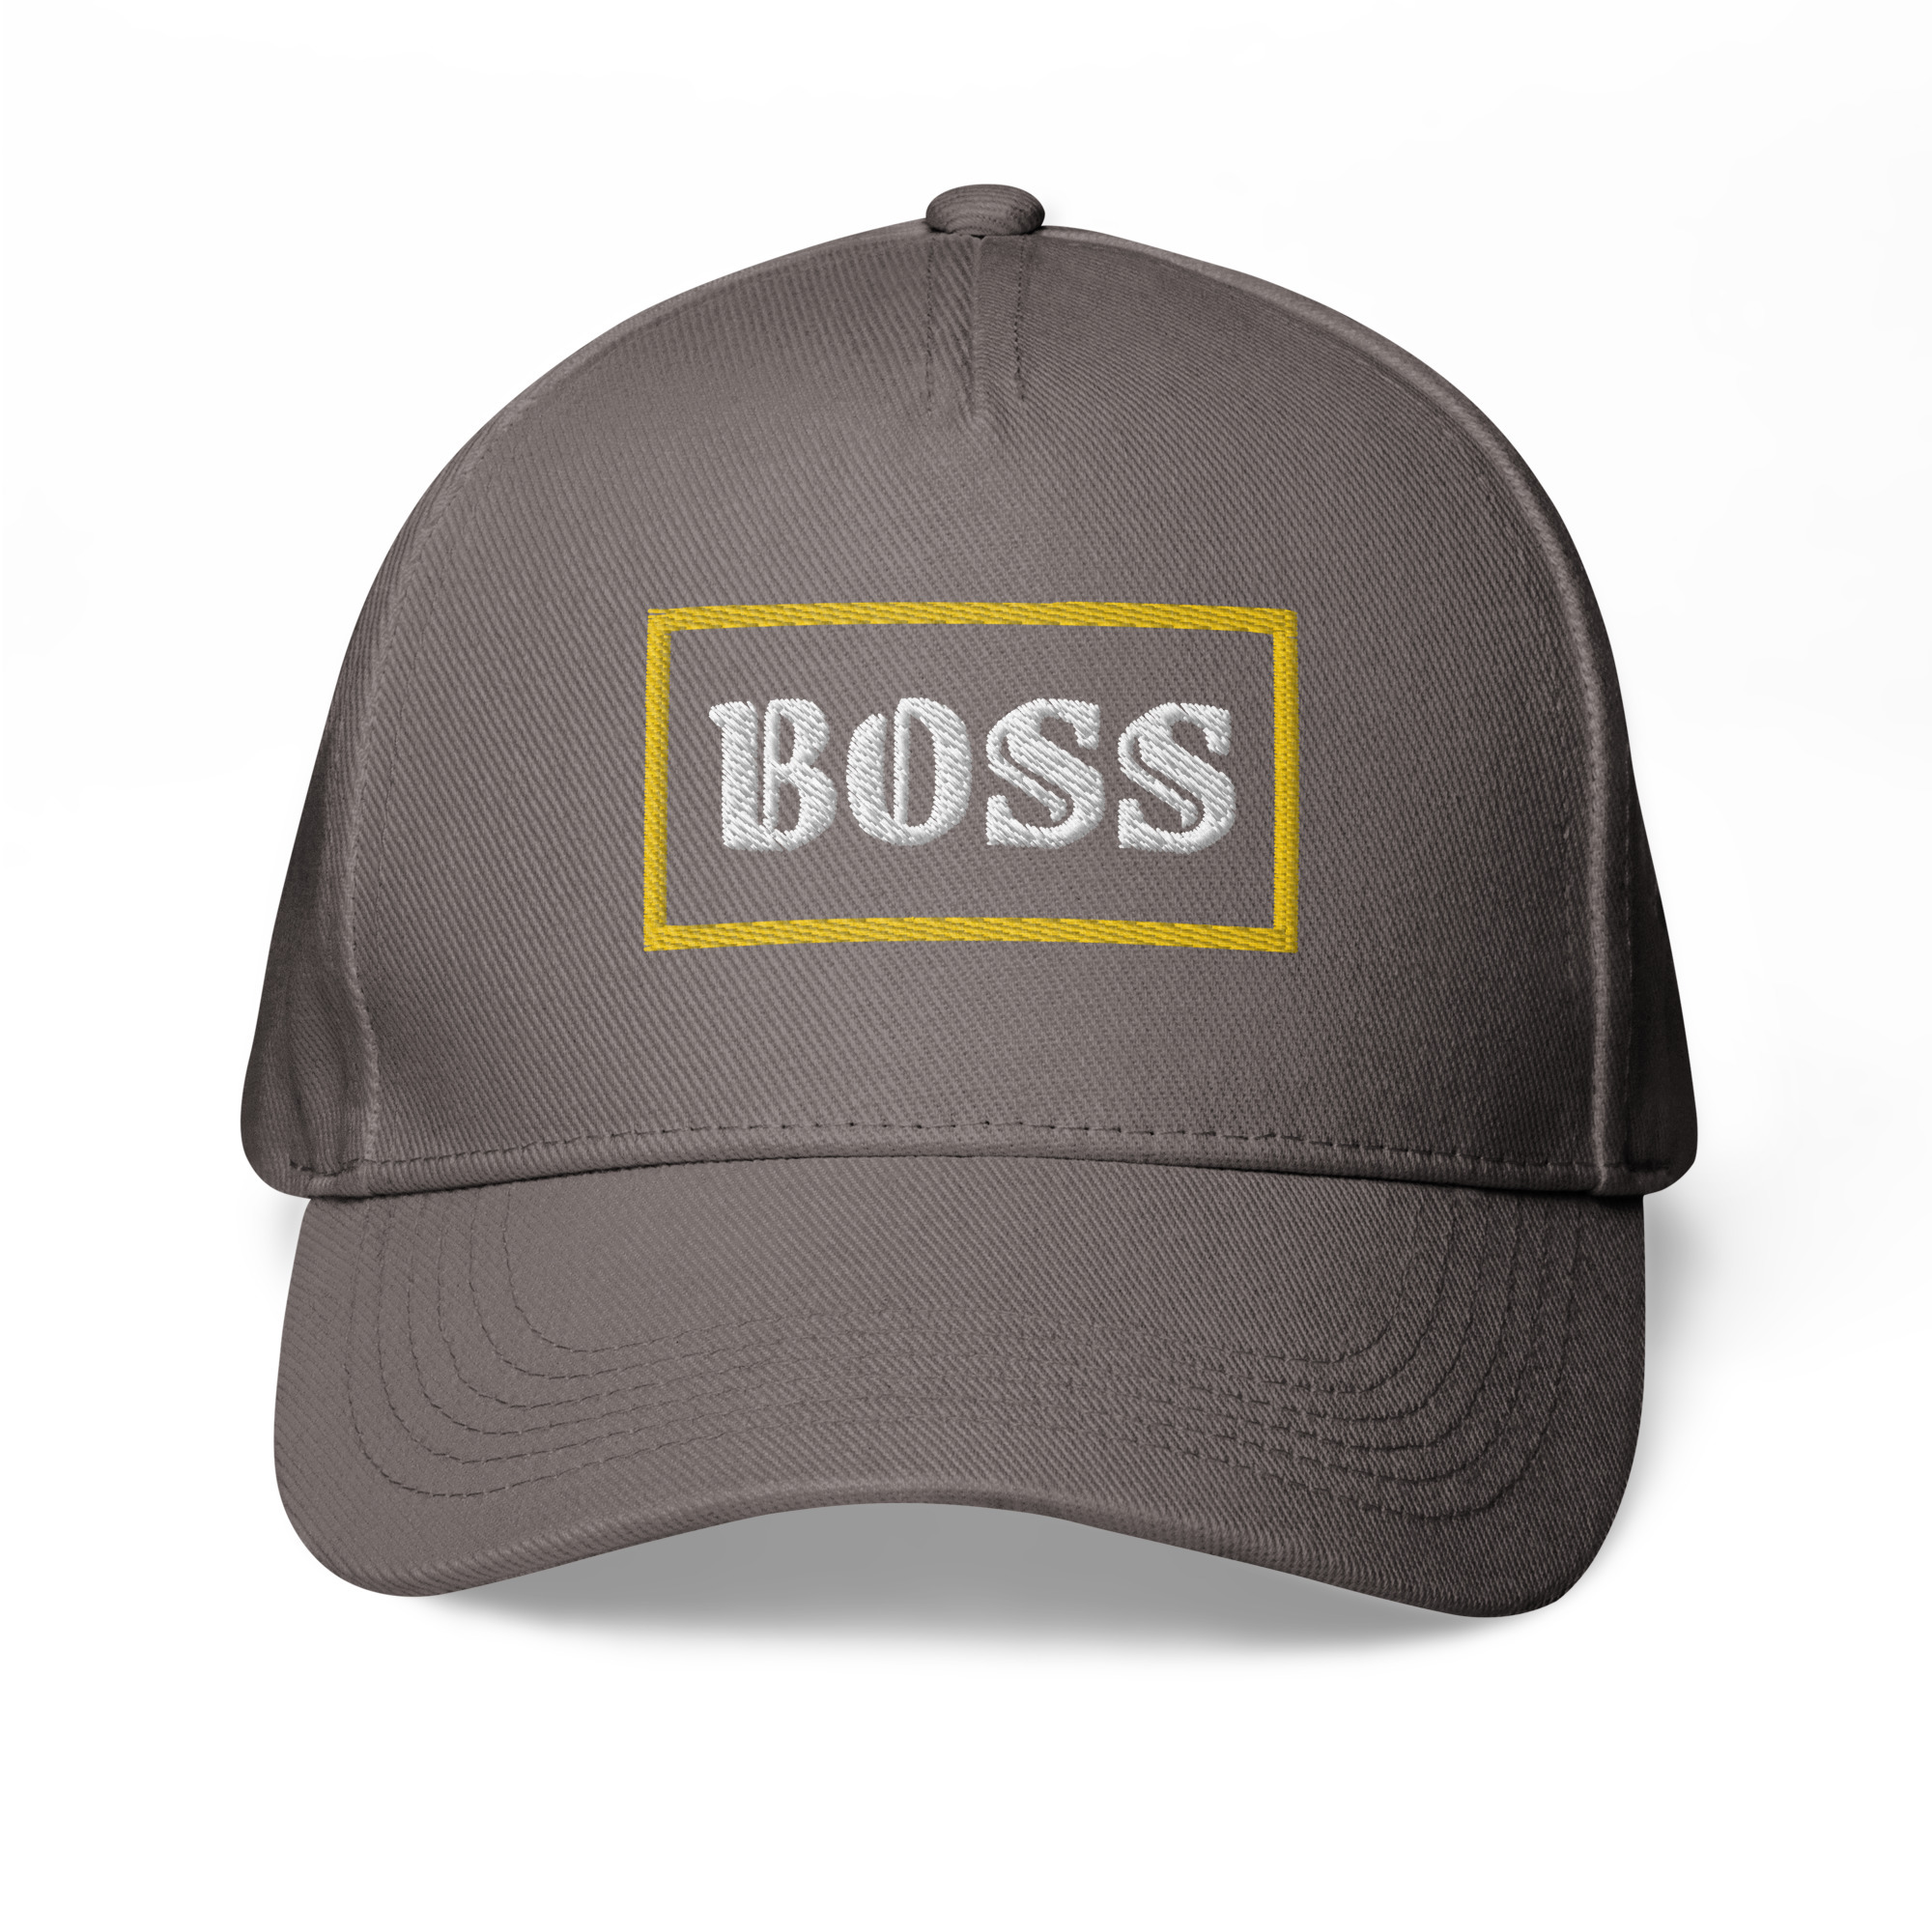 Boss Classic baseball cap on